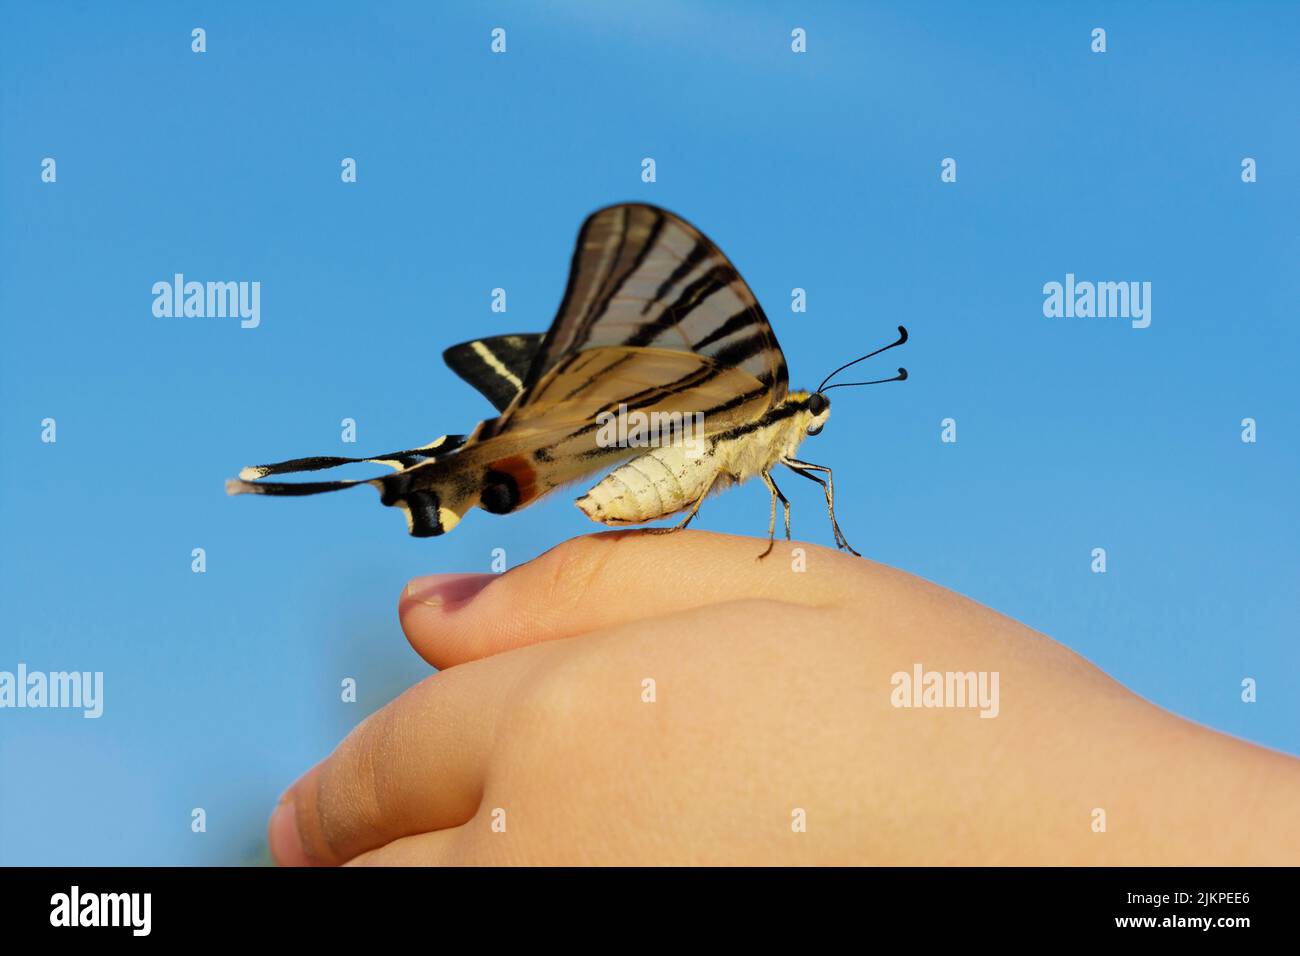 Mariposa en la mano - Foto simbólica sobre el tema de la protección de especies, conservación de la naturaleza, sostenibilidad, etc Foto de stock